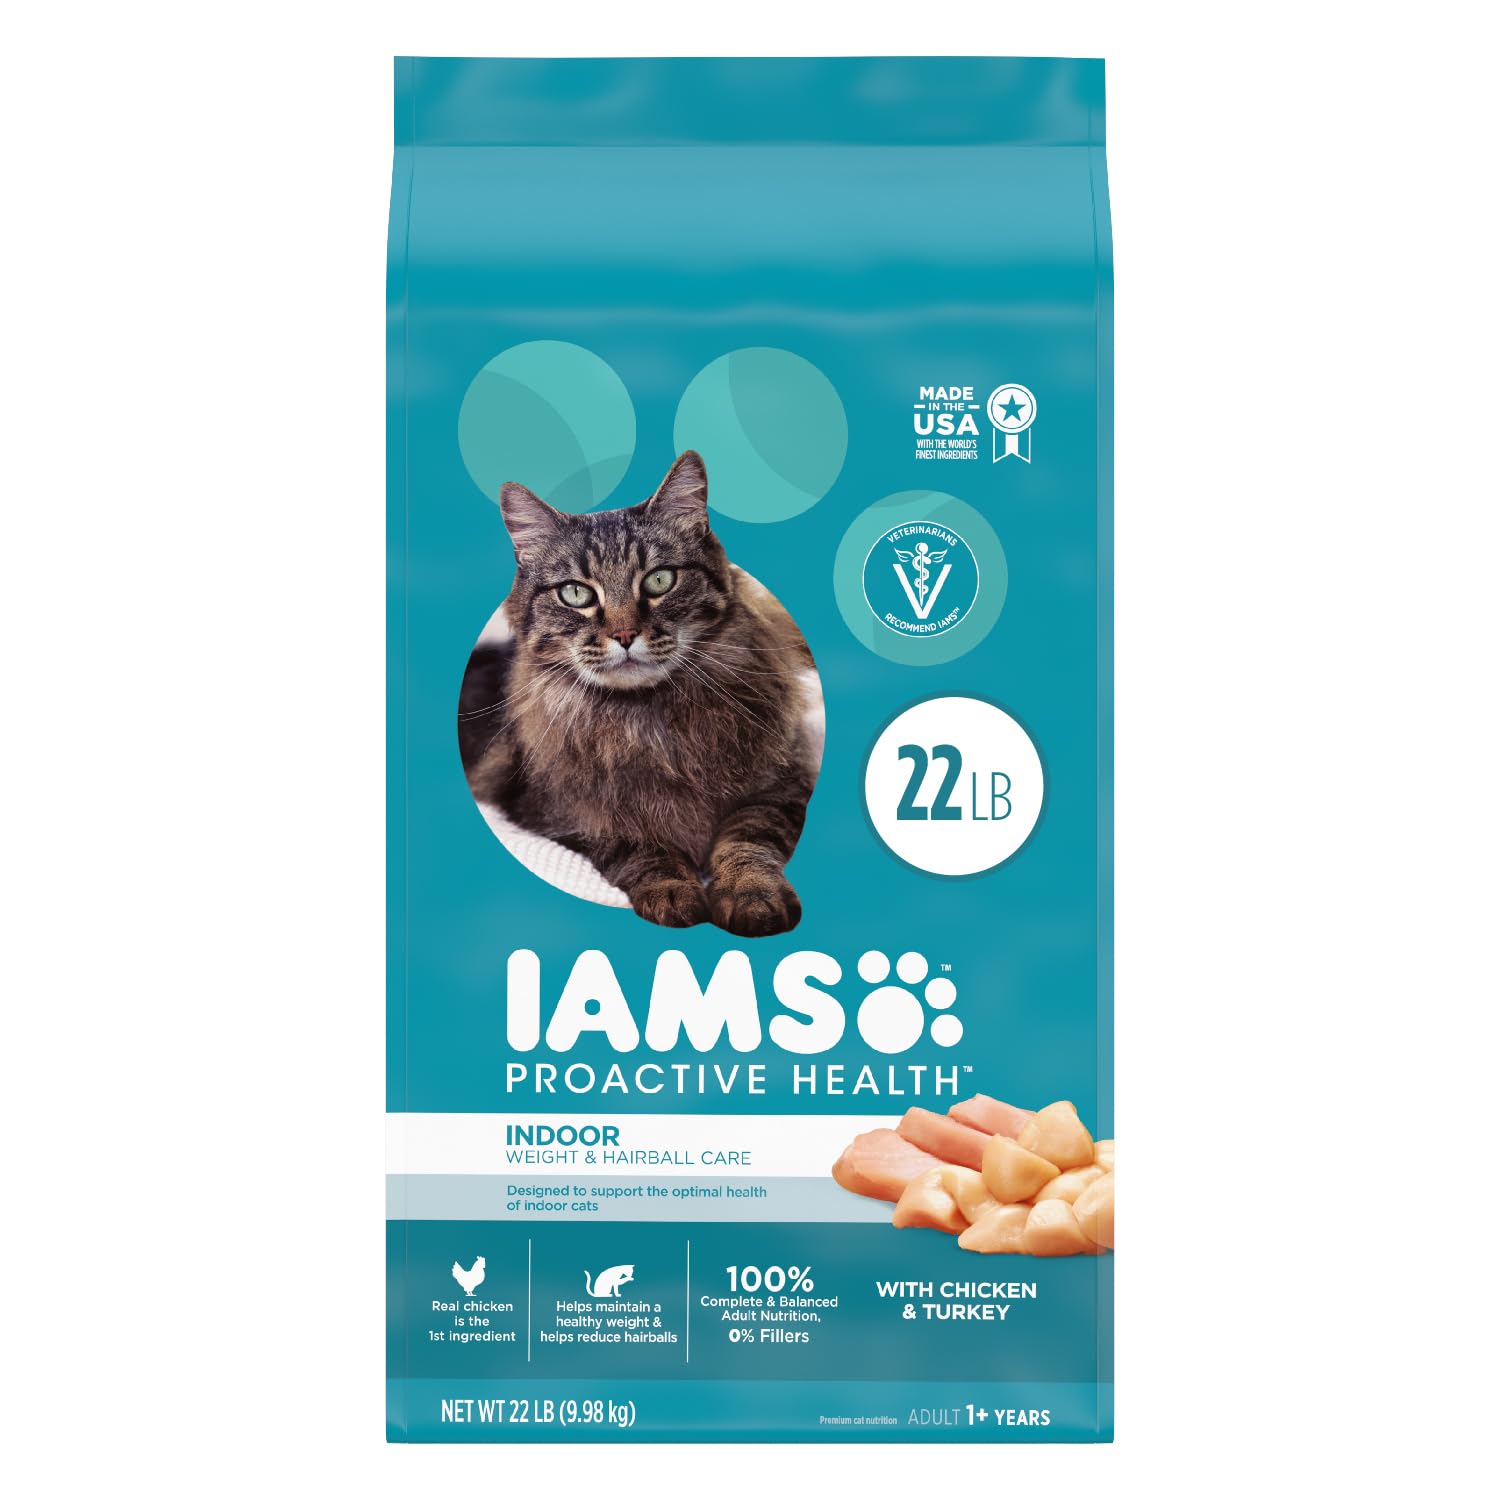 IAMS Cat Food